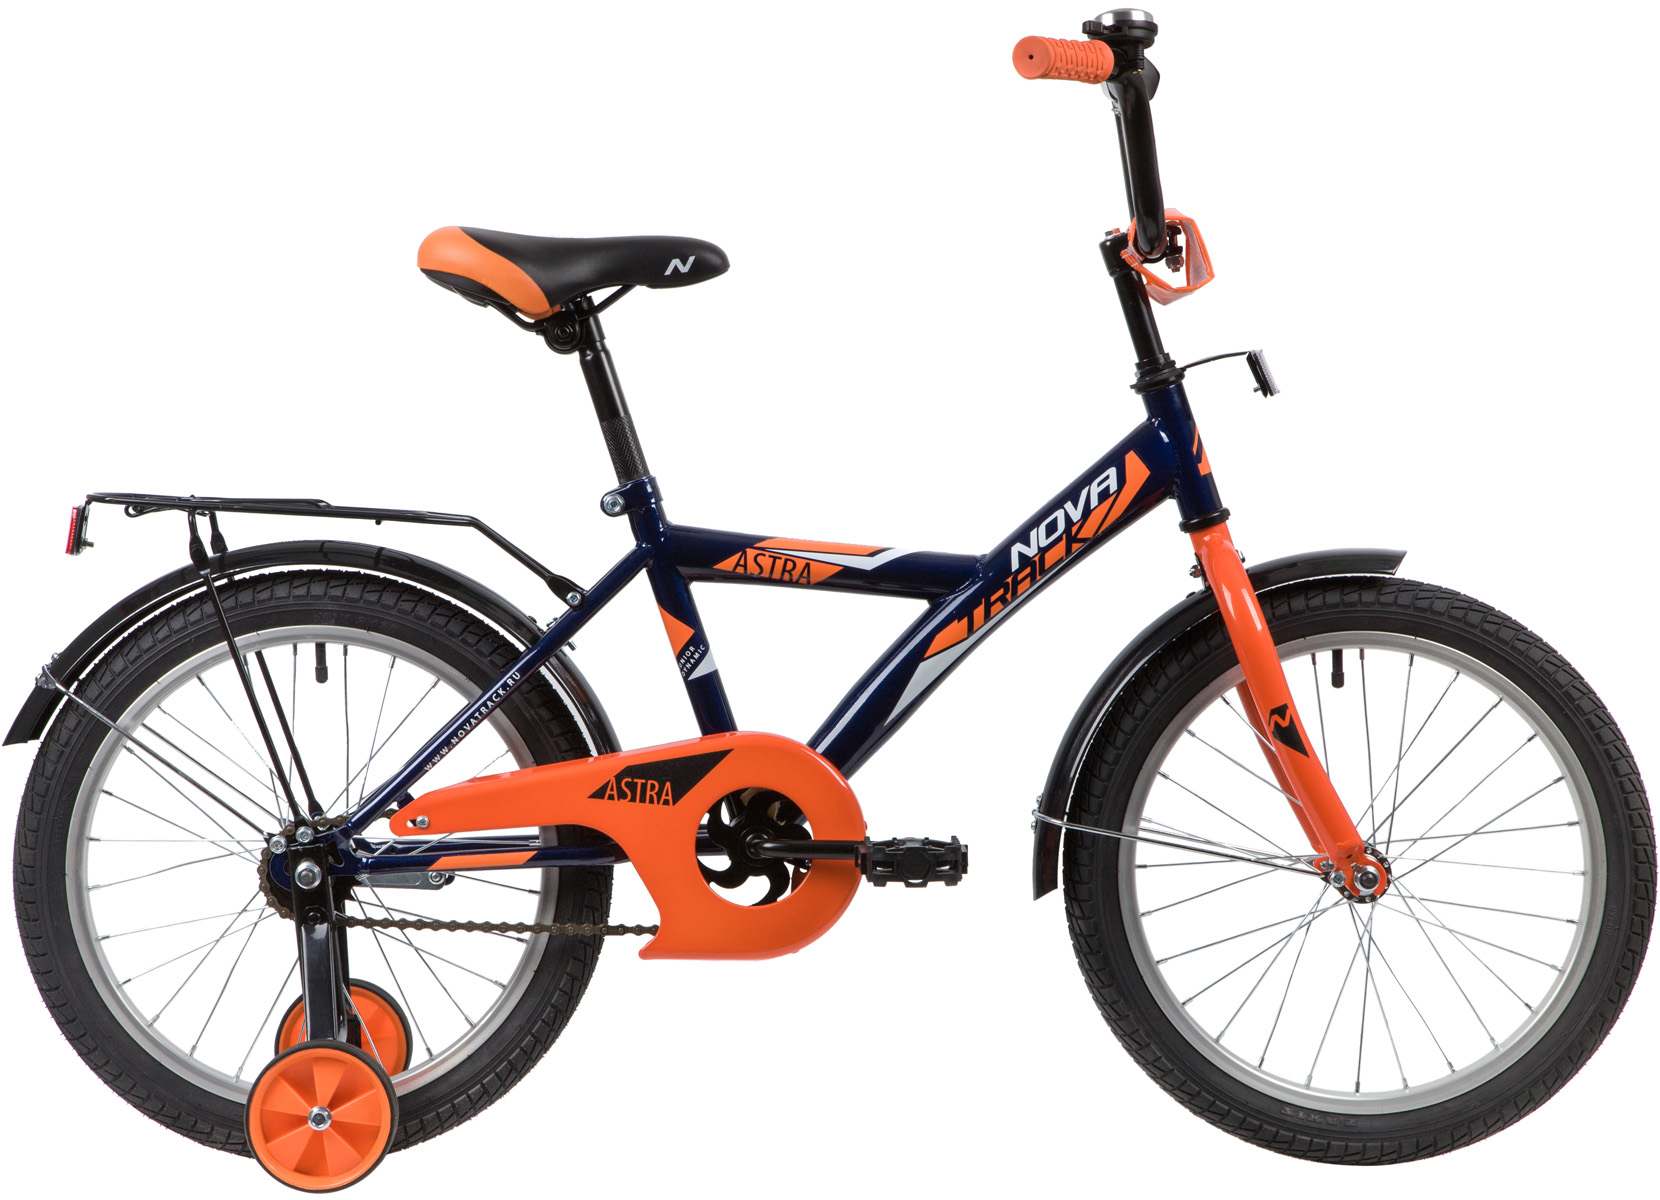  Отзывы о Детском велосипеде Novatrack Astra 14" 2020 2020